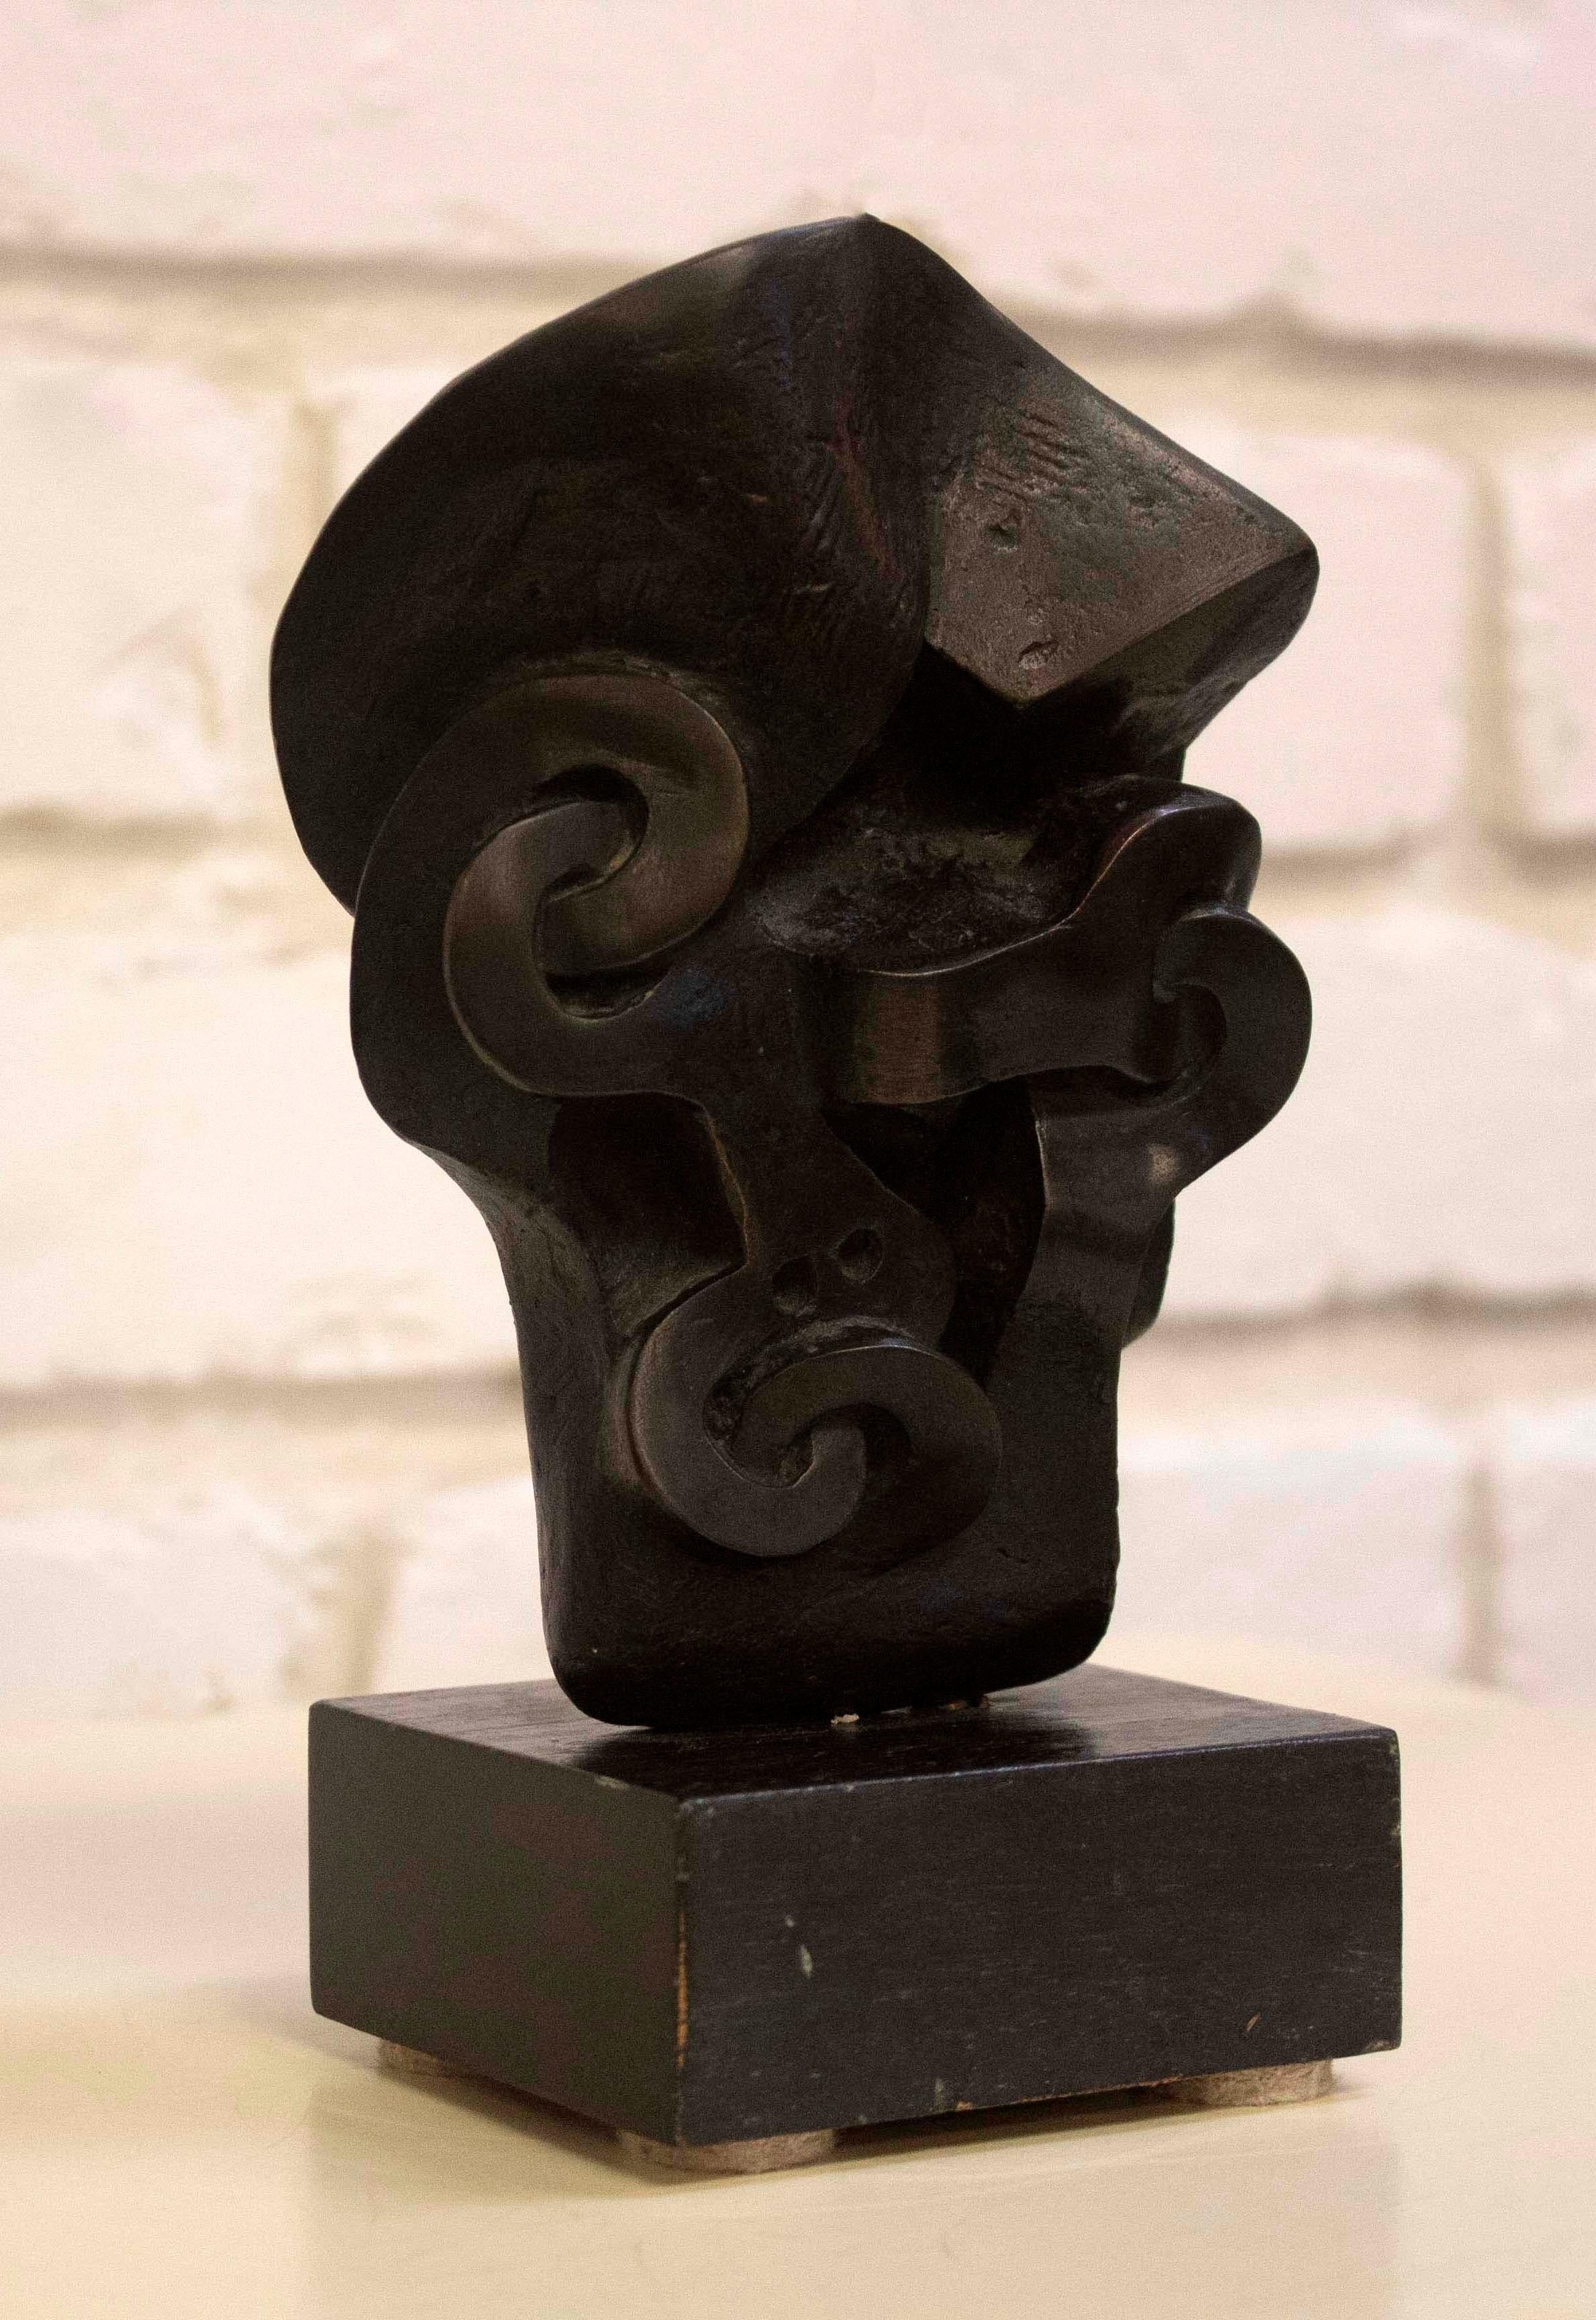 Pour votre considération, voici une stupéfiante sculpture abstraite de table en bronze réalisée par l'artiste de renommée internationale Sorel Etrog. 5.5